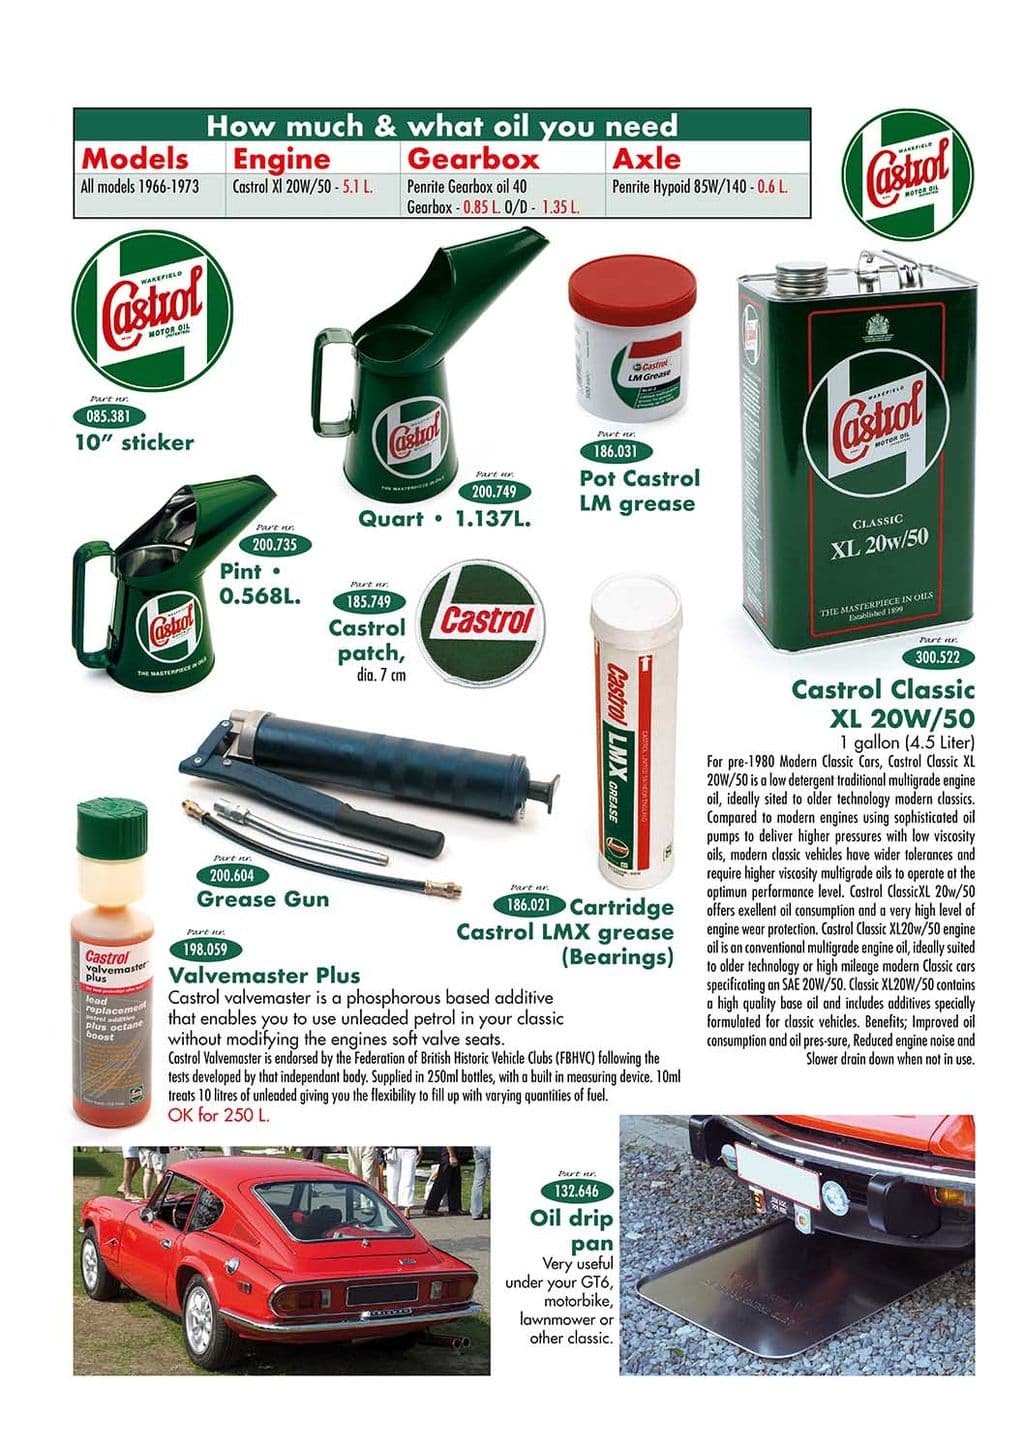 Oil cans & drip pan - Plaque de récupération d'huile - Entretien & stockage - Jaguar XJ6-12 / Daimler Sovereign, D6 1968-'92 - Oil cans & drip pan - 1